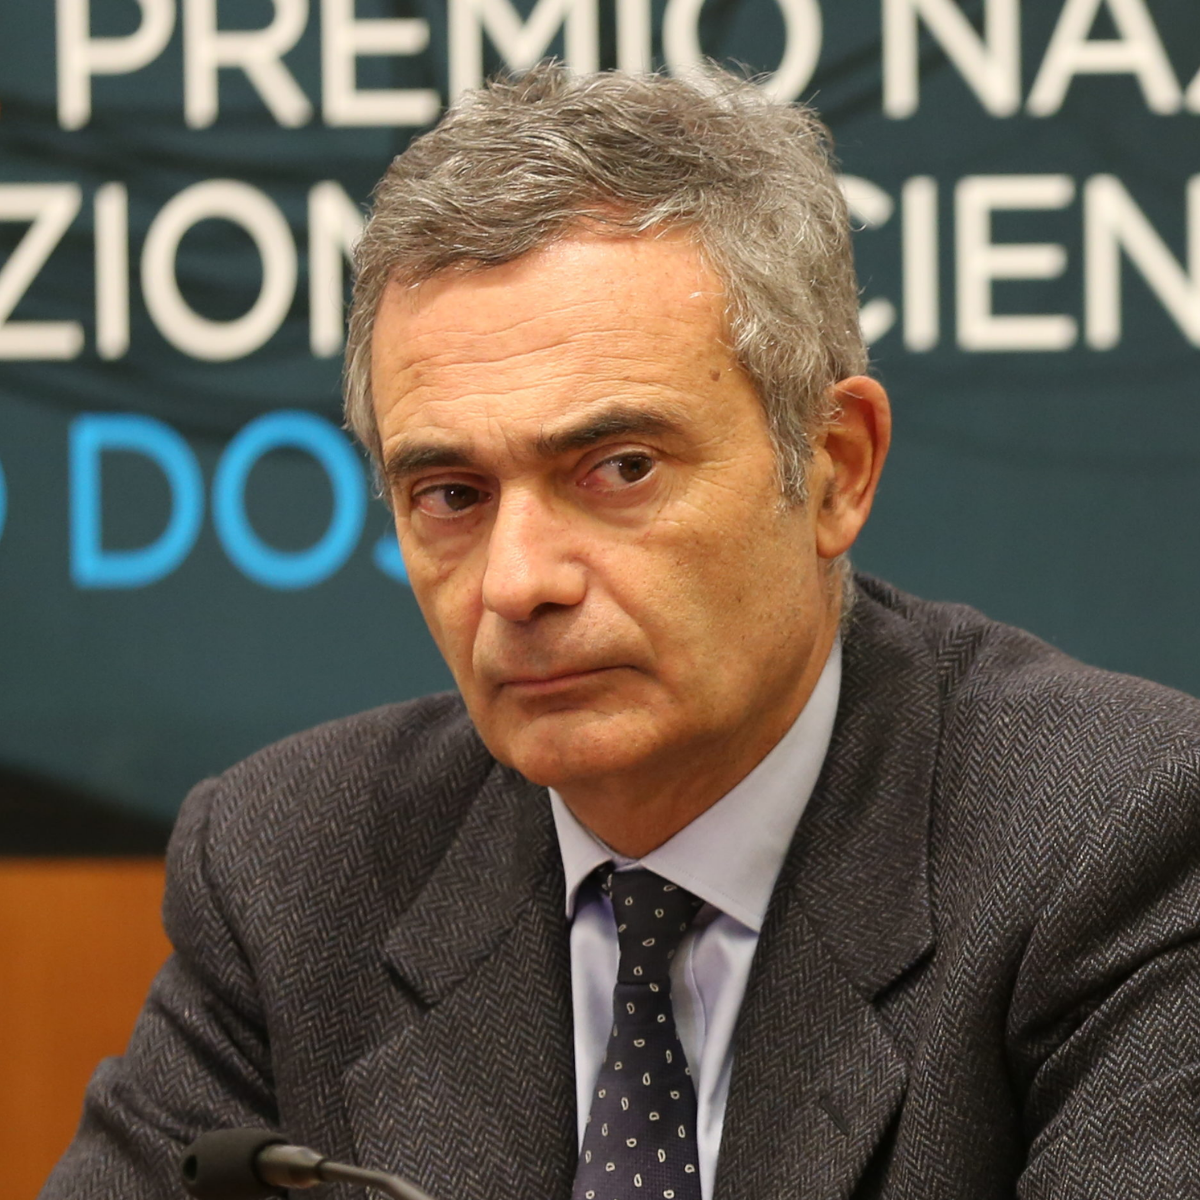 Giorgio De Rita